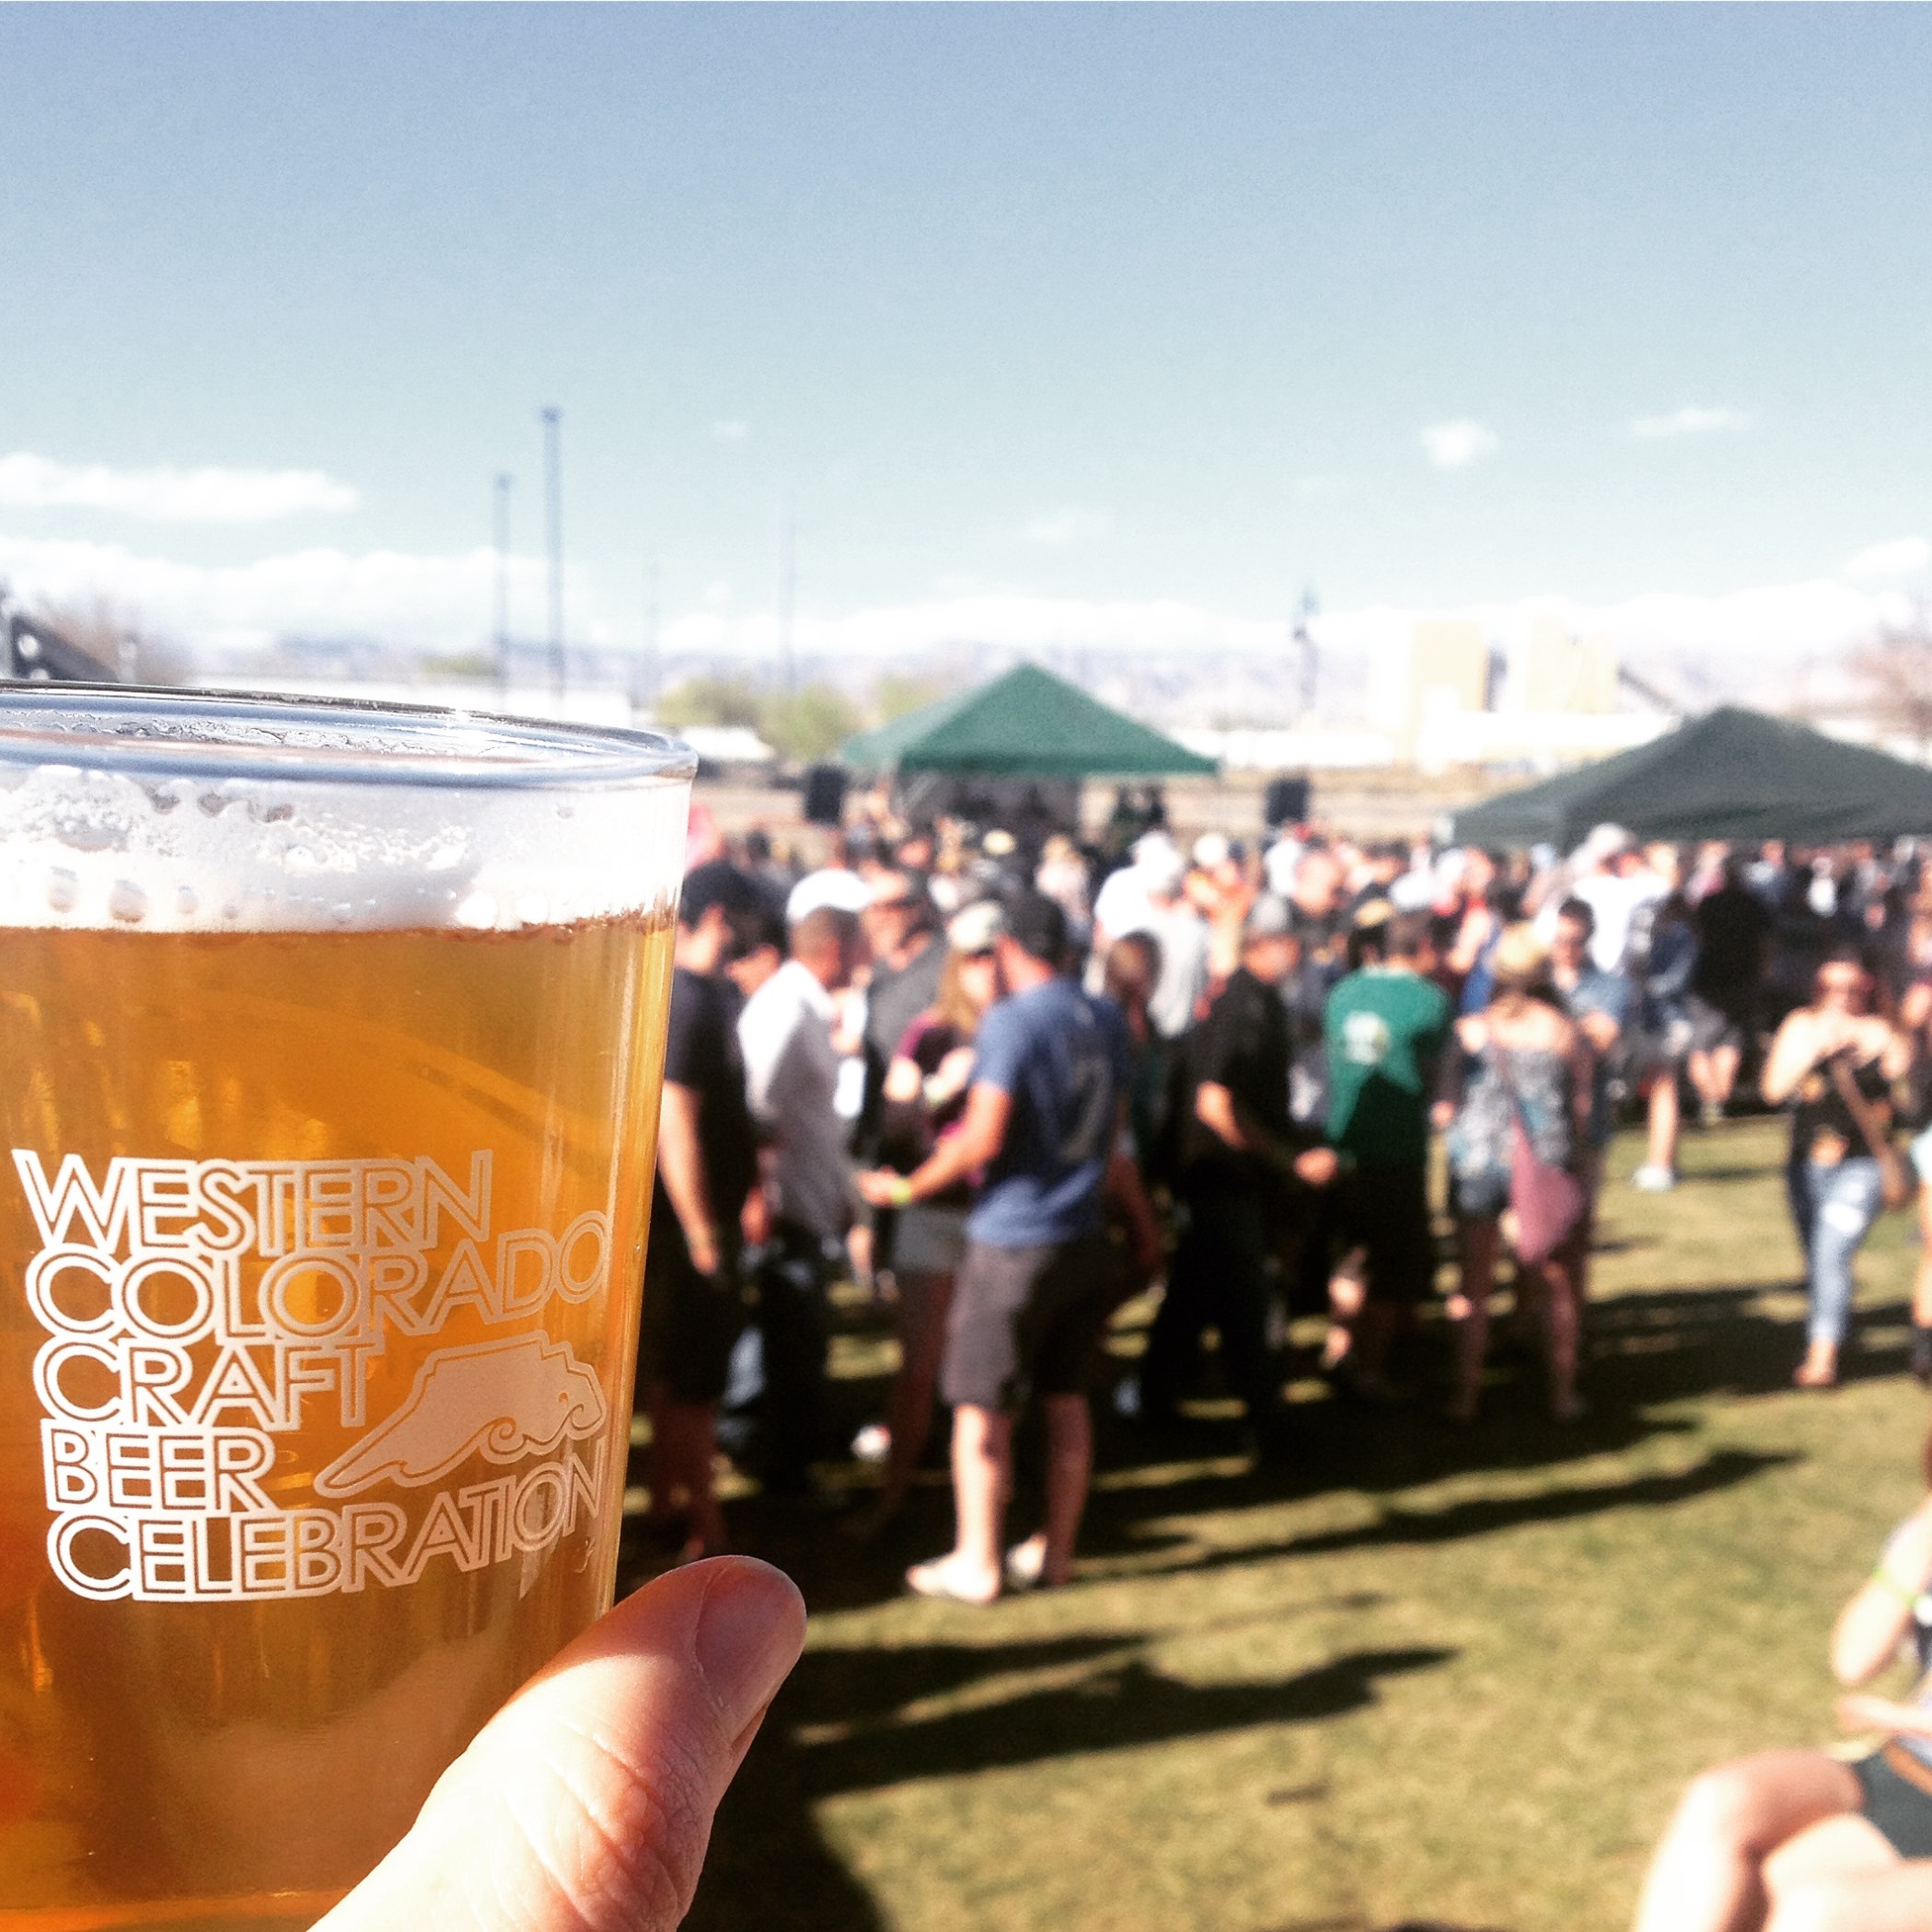 Western Colorado Craft Beer Celebration banner image